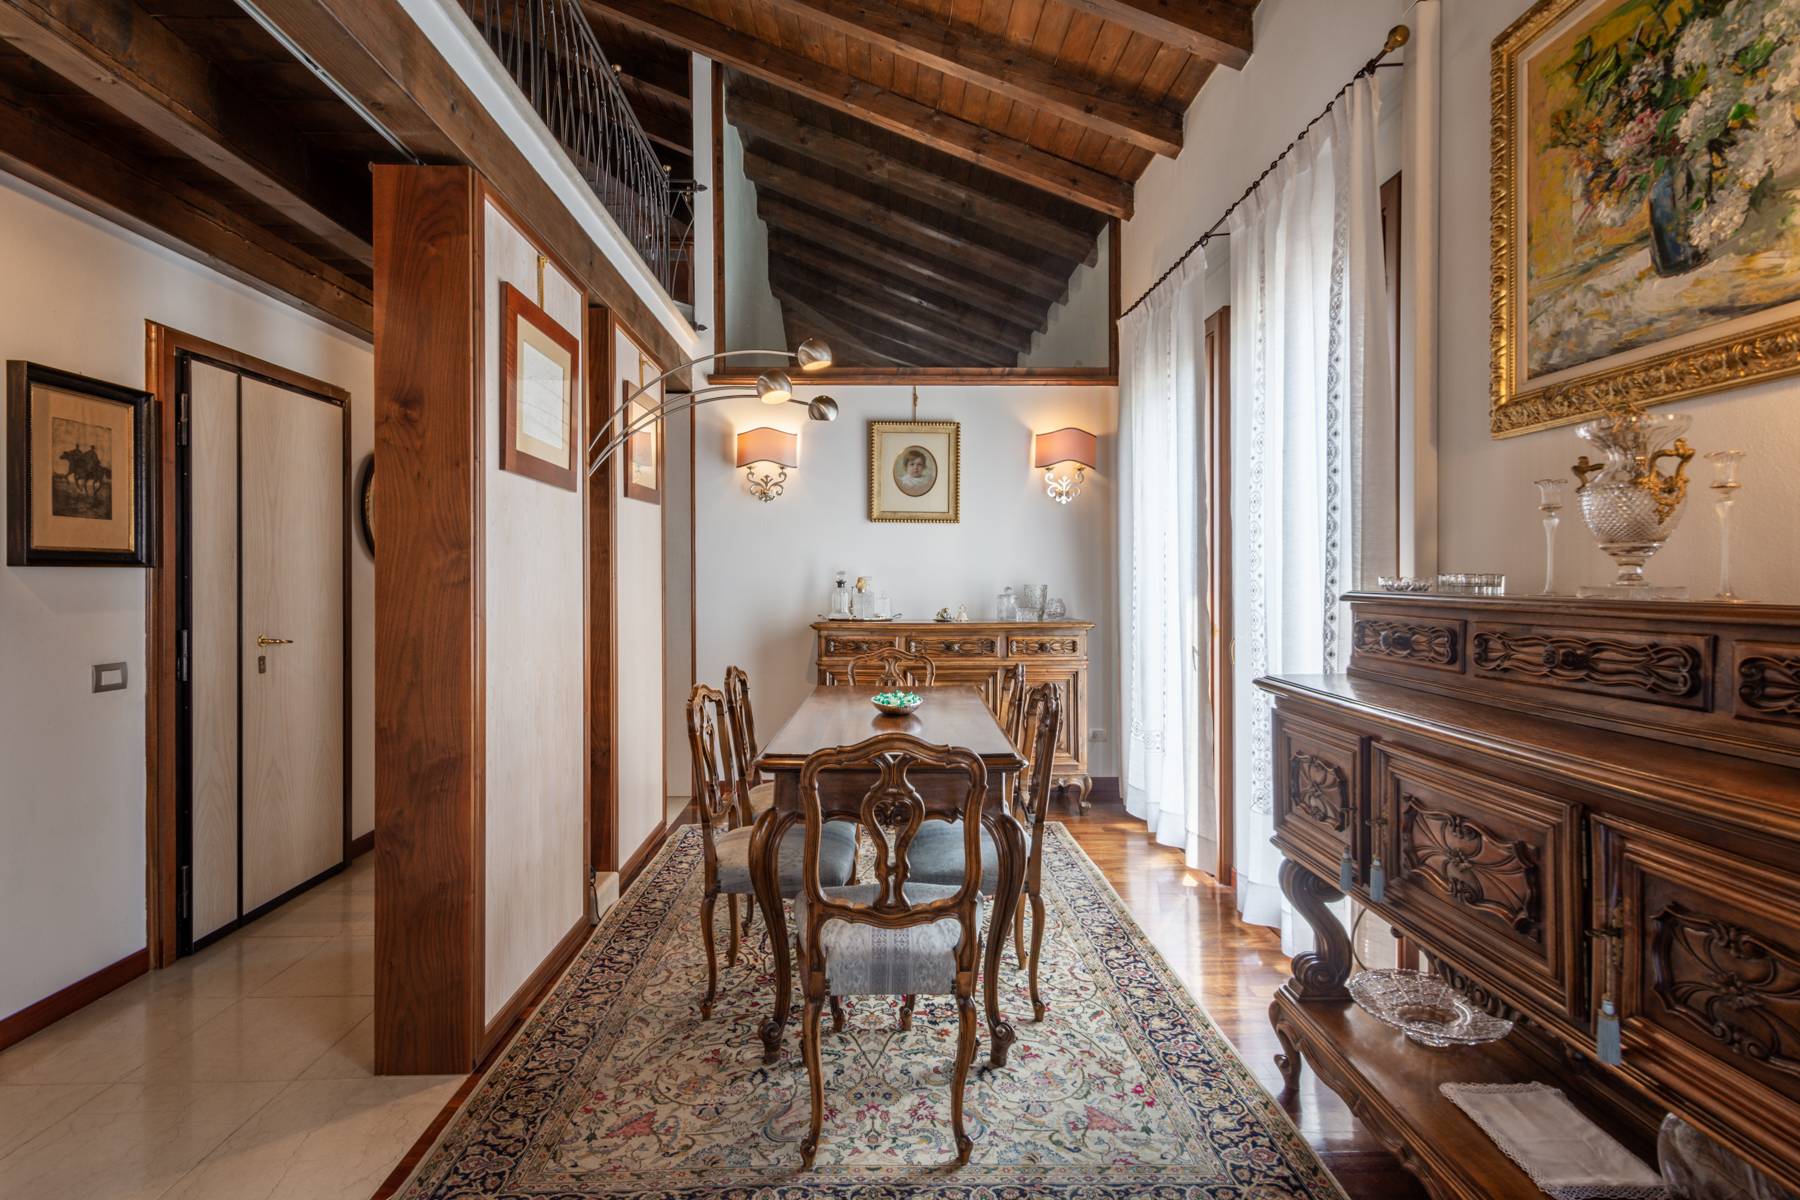 Splendido attico in Villa stile Liberty a pochi minuti dal centro storico di Verona - 5